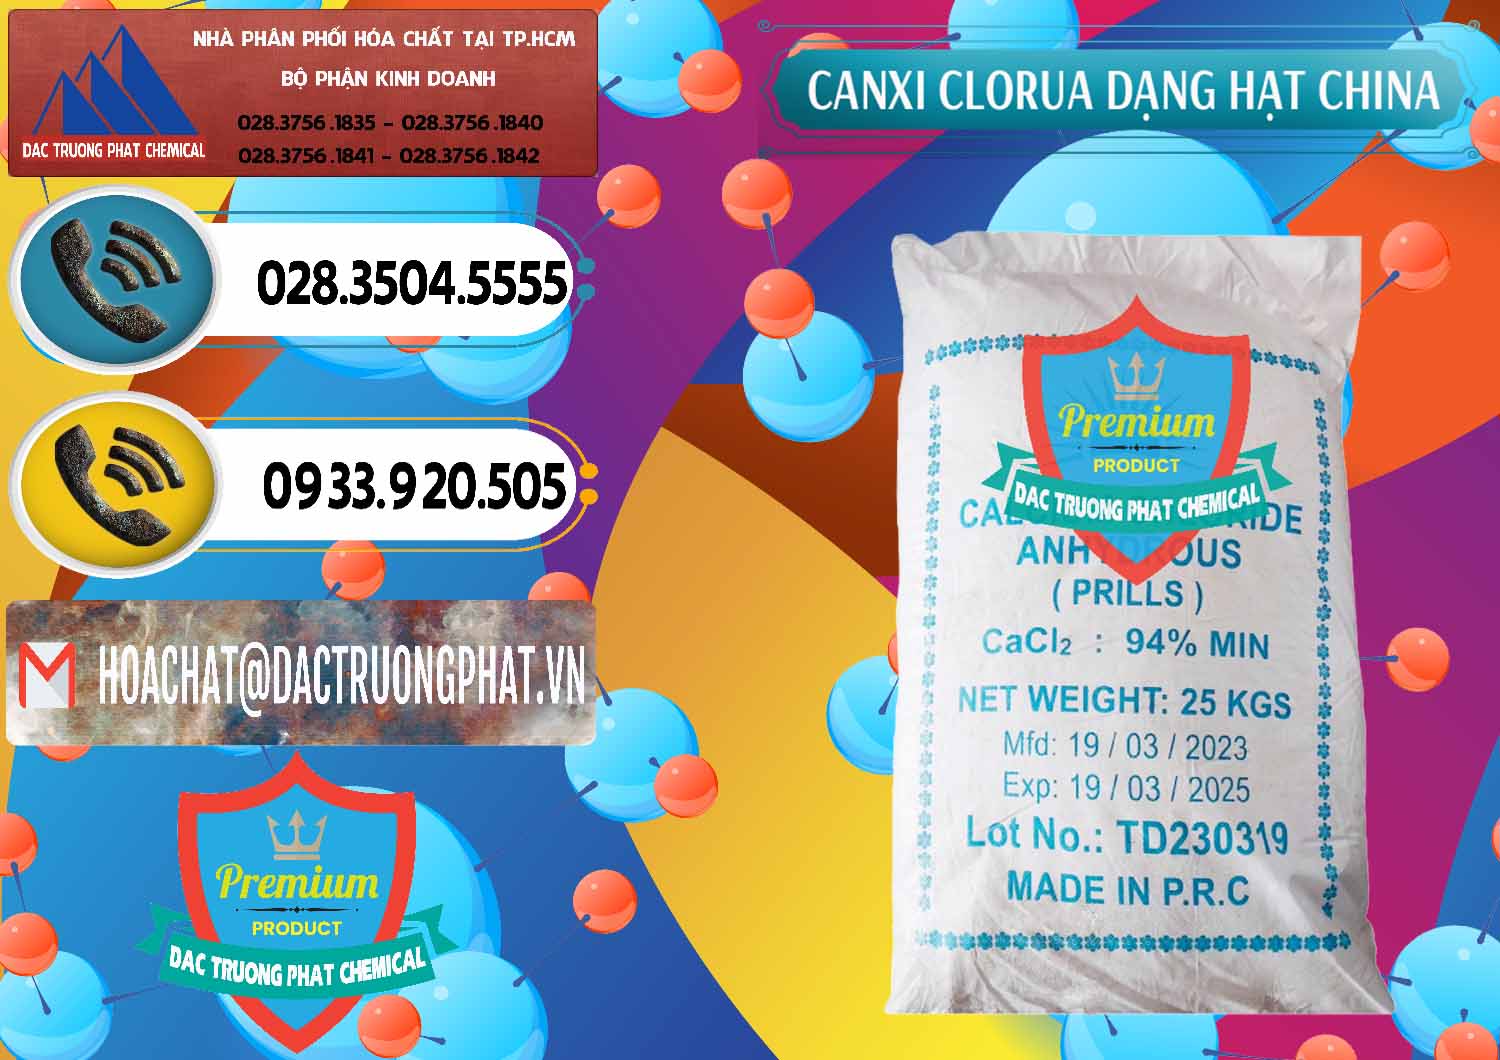 Nơi cung cấp _ bán CaCl2 – Canxi Clorua 94% Dạng Hạt Trung Quốc China - 0373 - Nhà cung cấp ( phân phối ) hóa chất tại TP.HCM - hoachatdetnhuom.vn